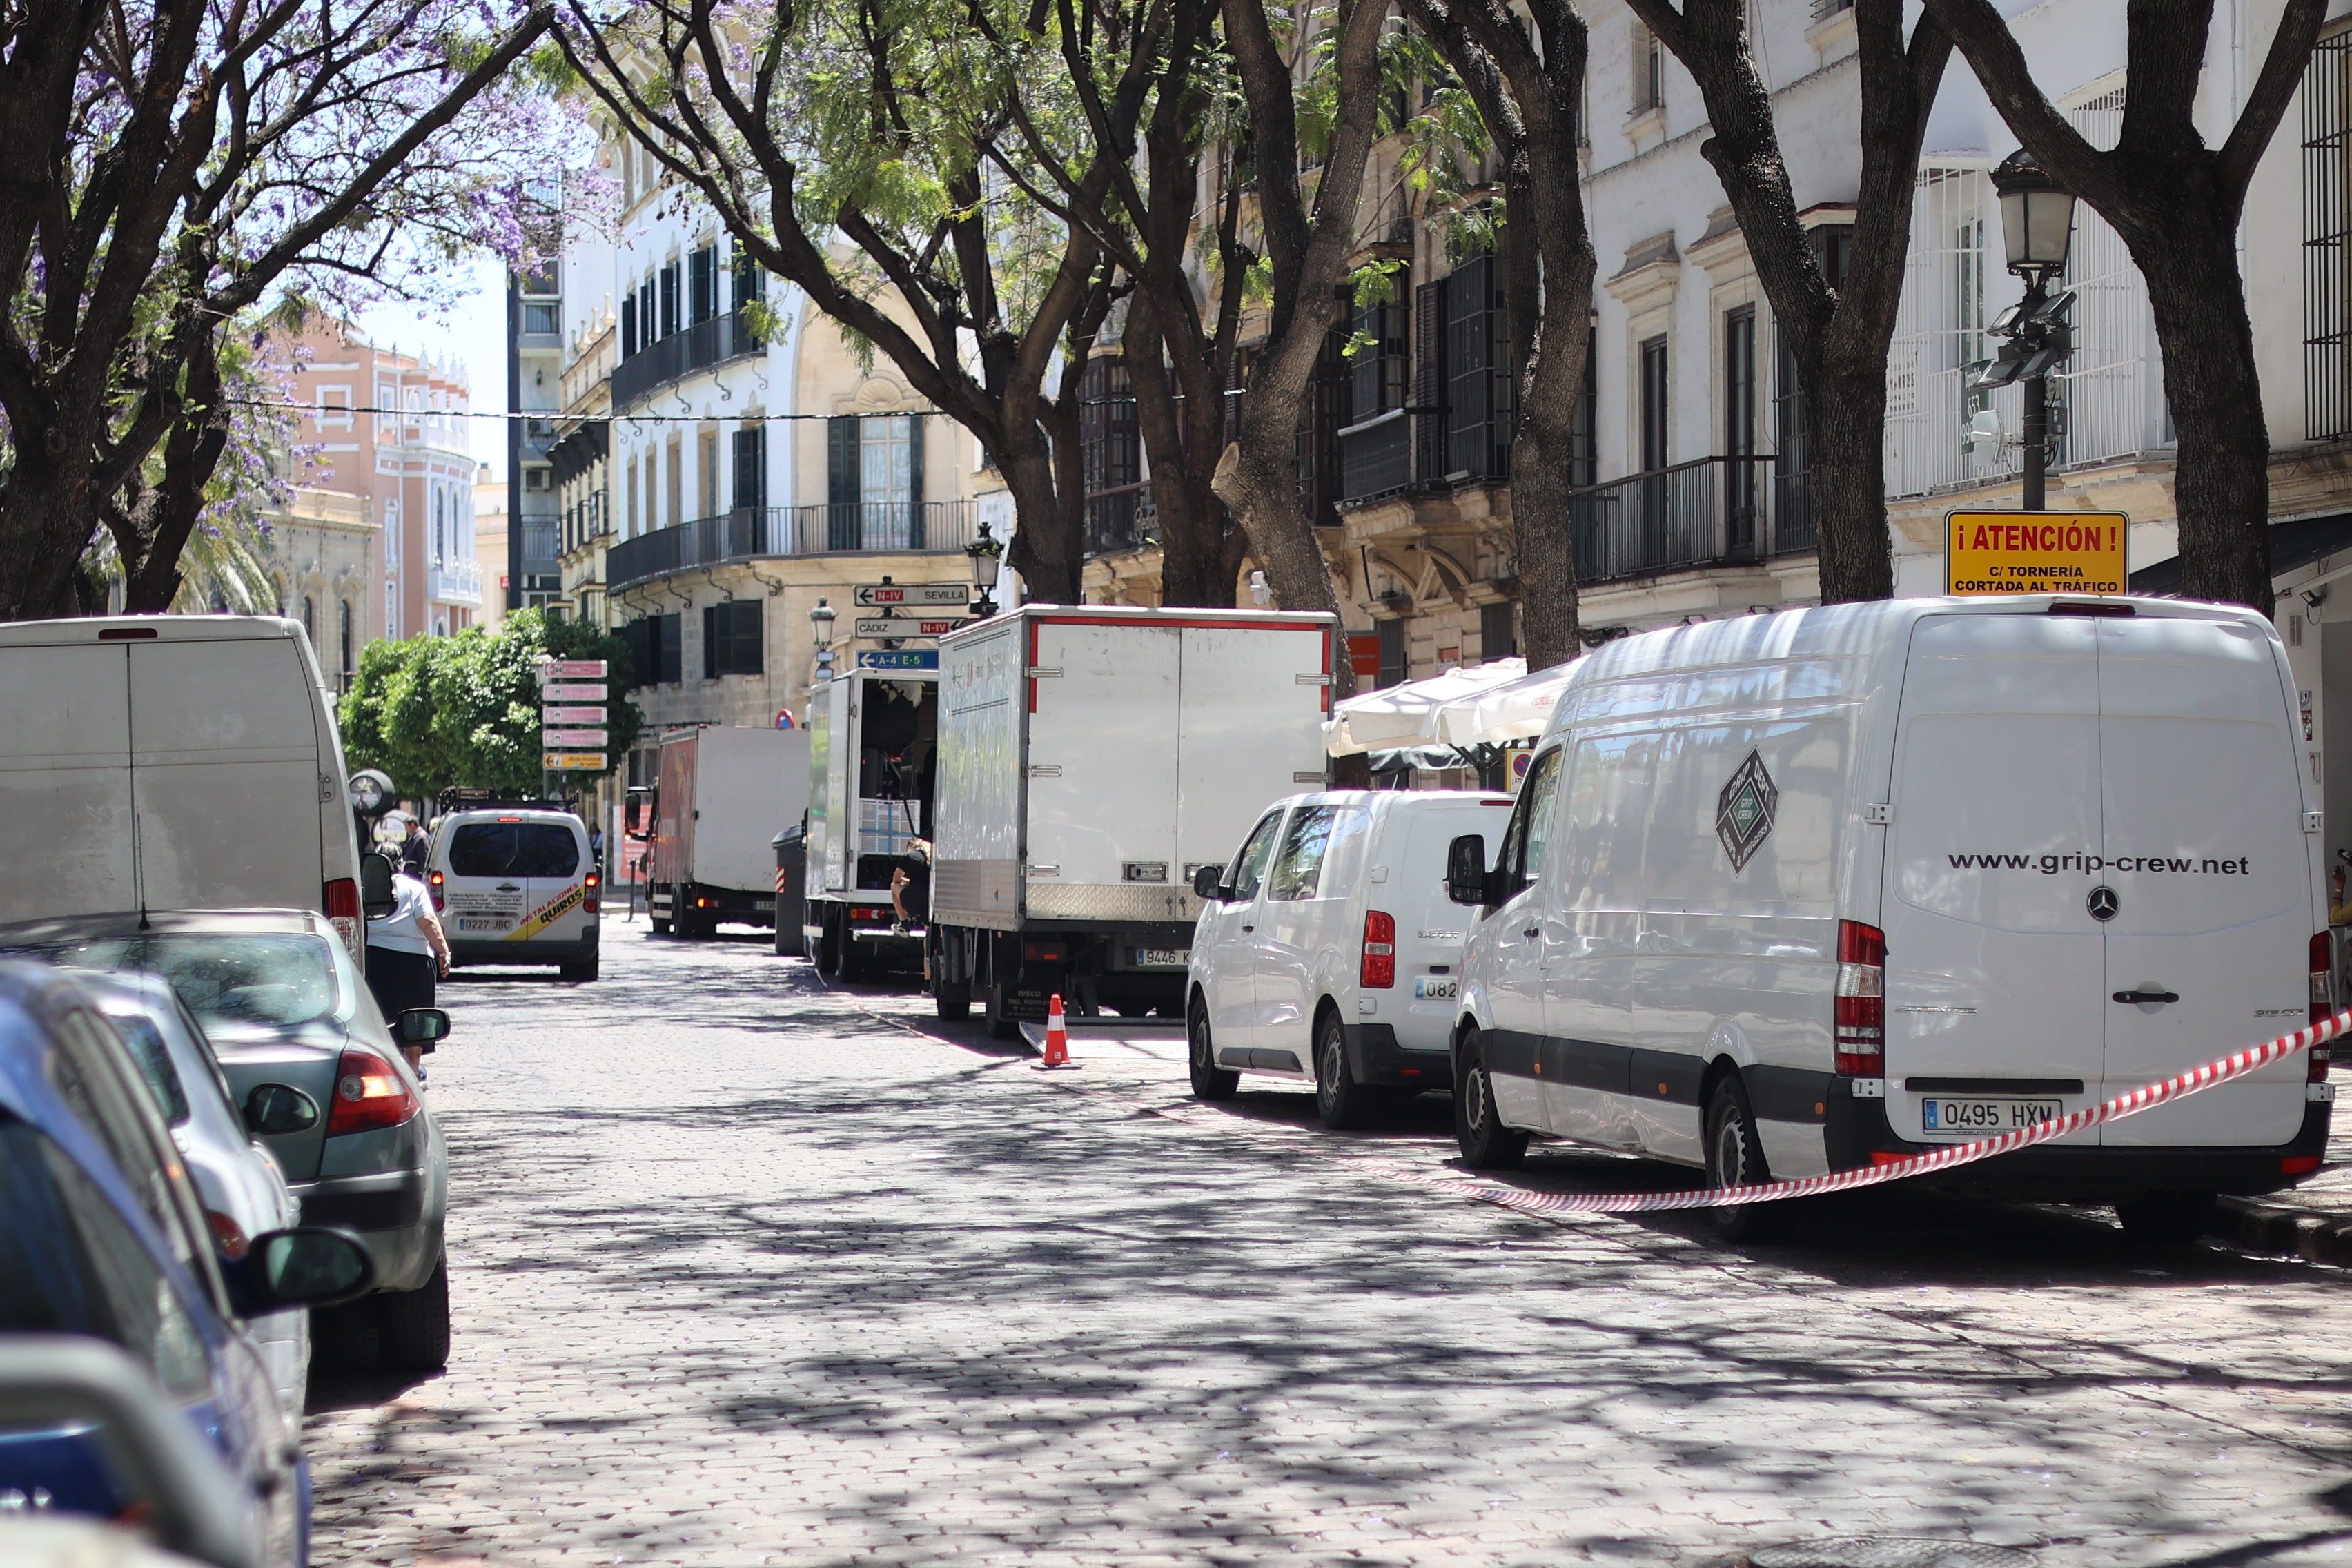 Camiones del rodaje de la nueva película en el centro de Jerez.